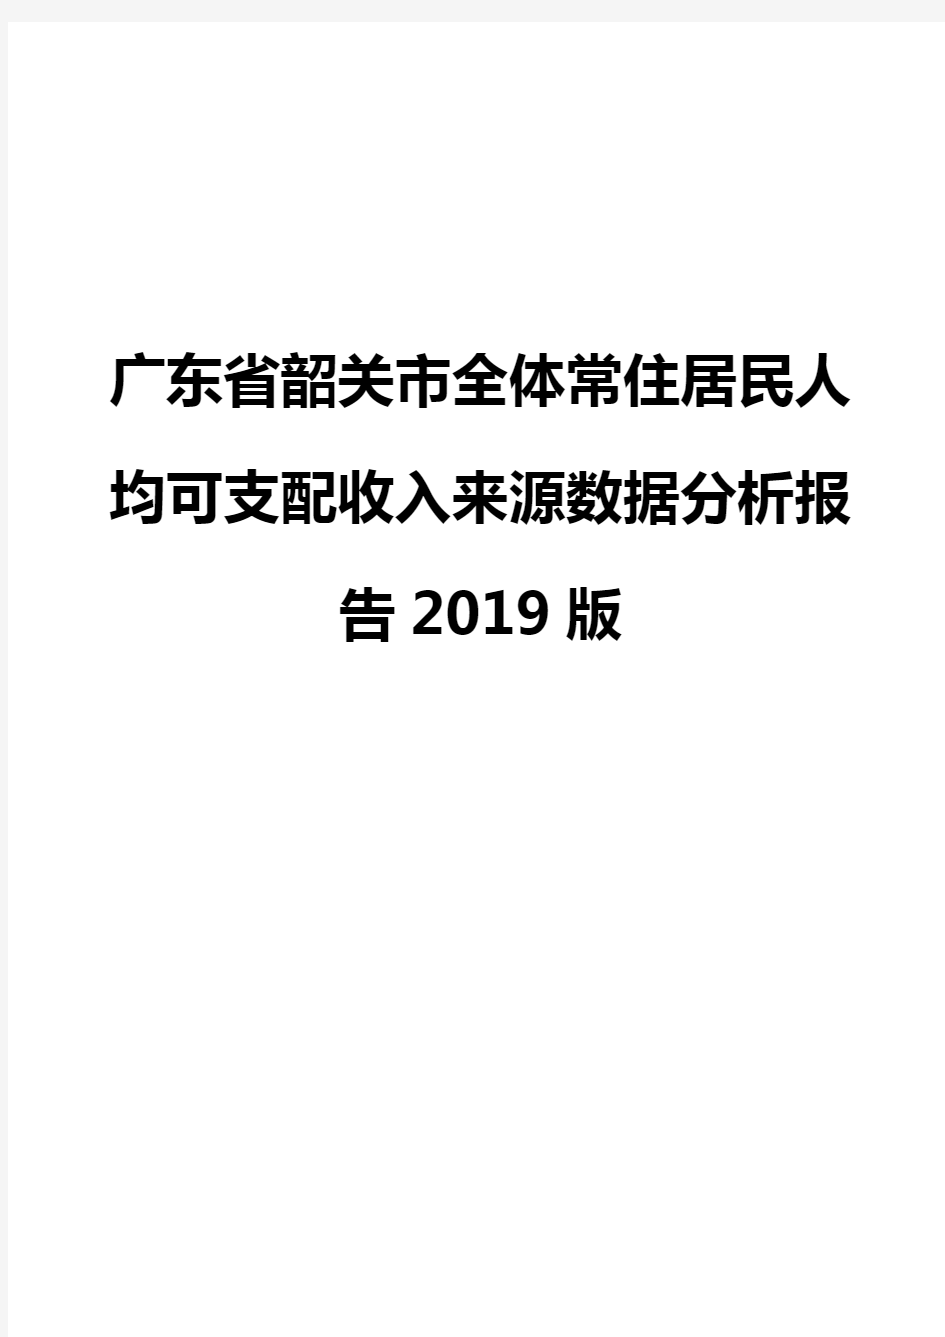 广东省韶关市全体常住居民人均可支配收入来源数据分析报告2019版